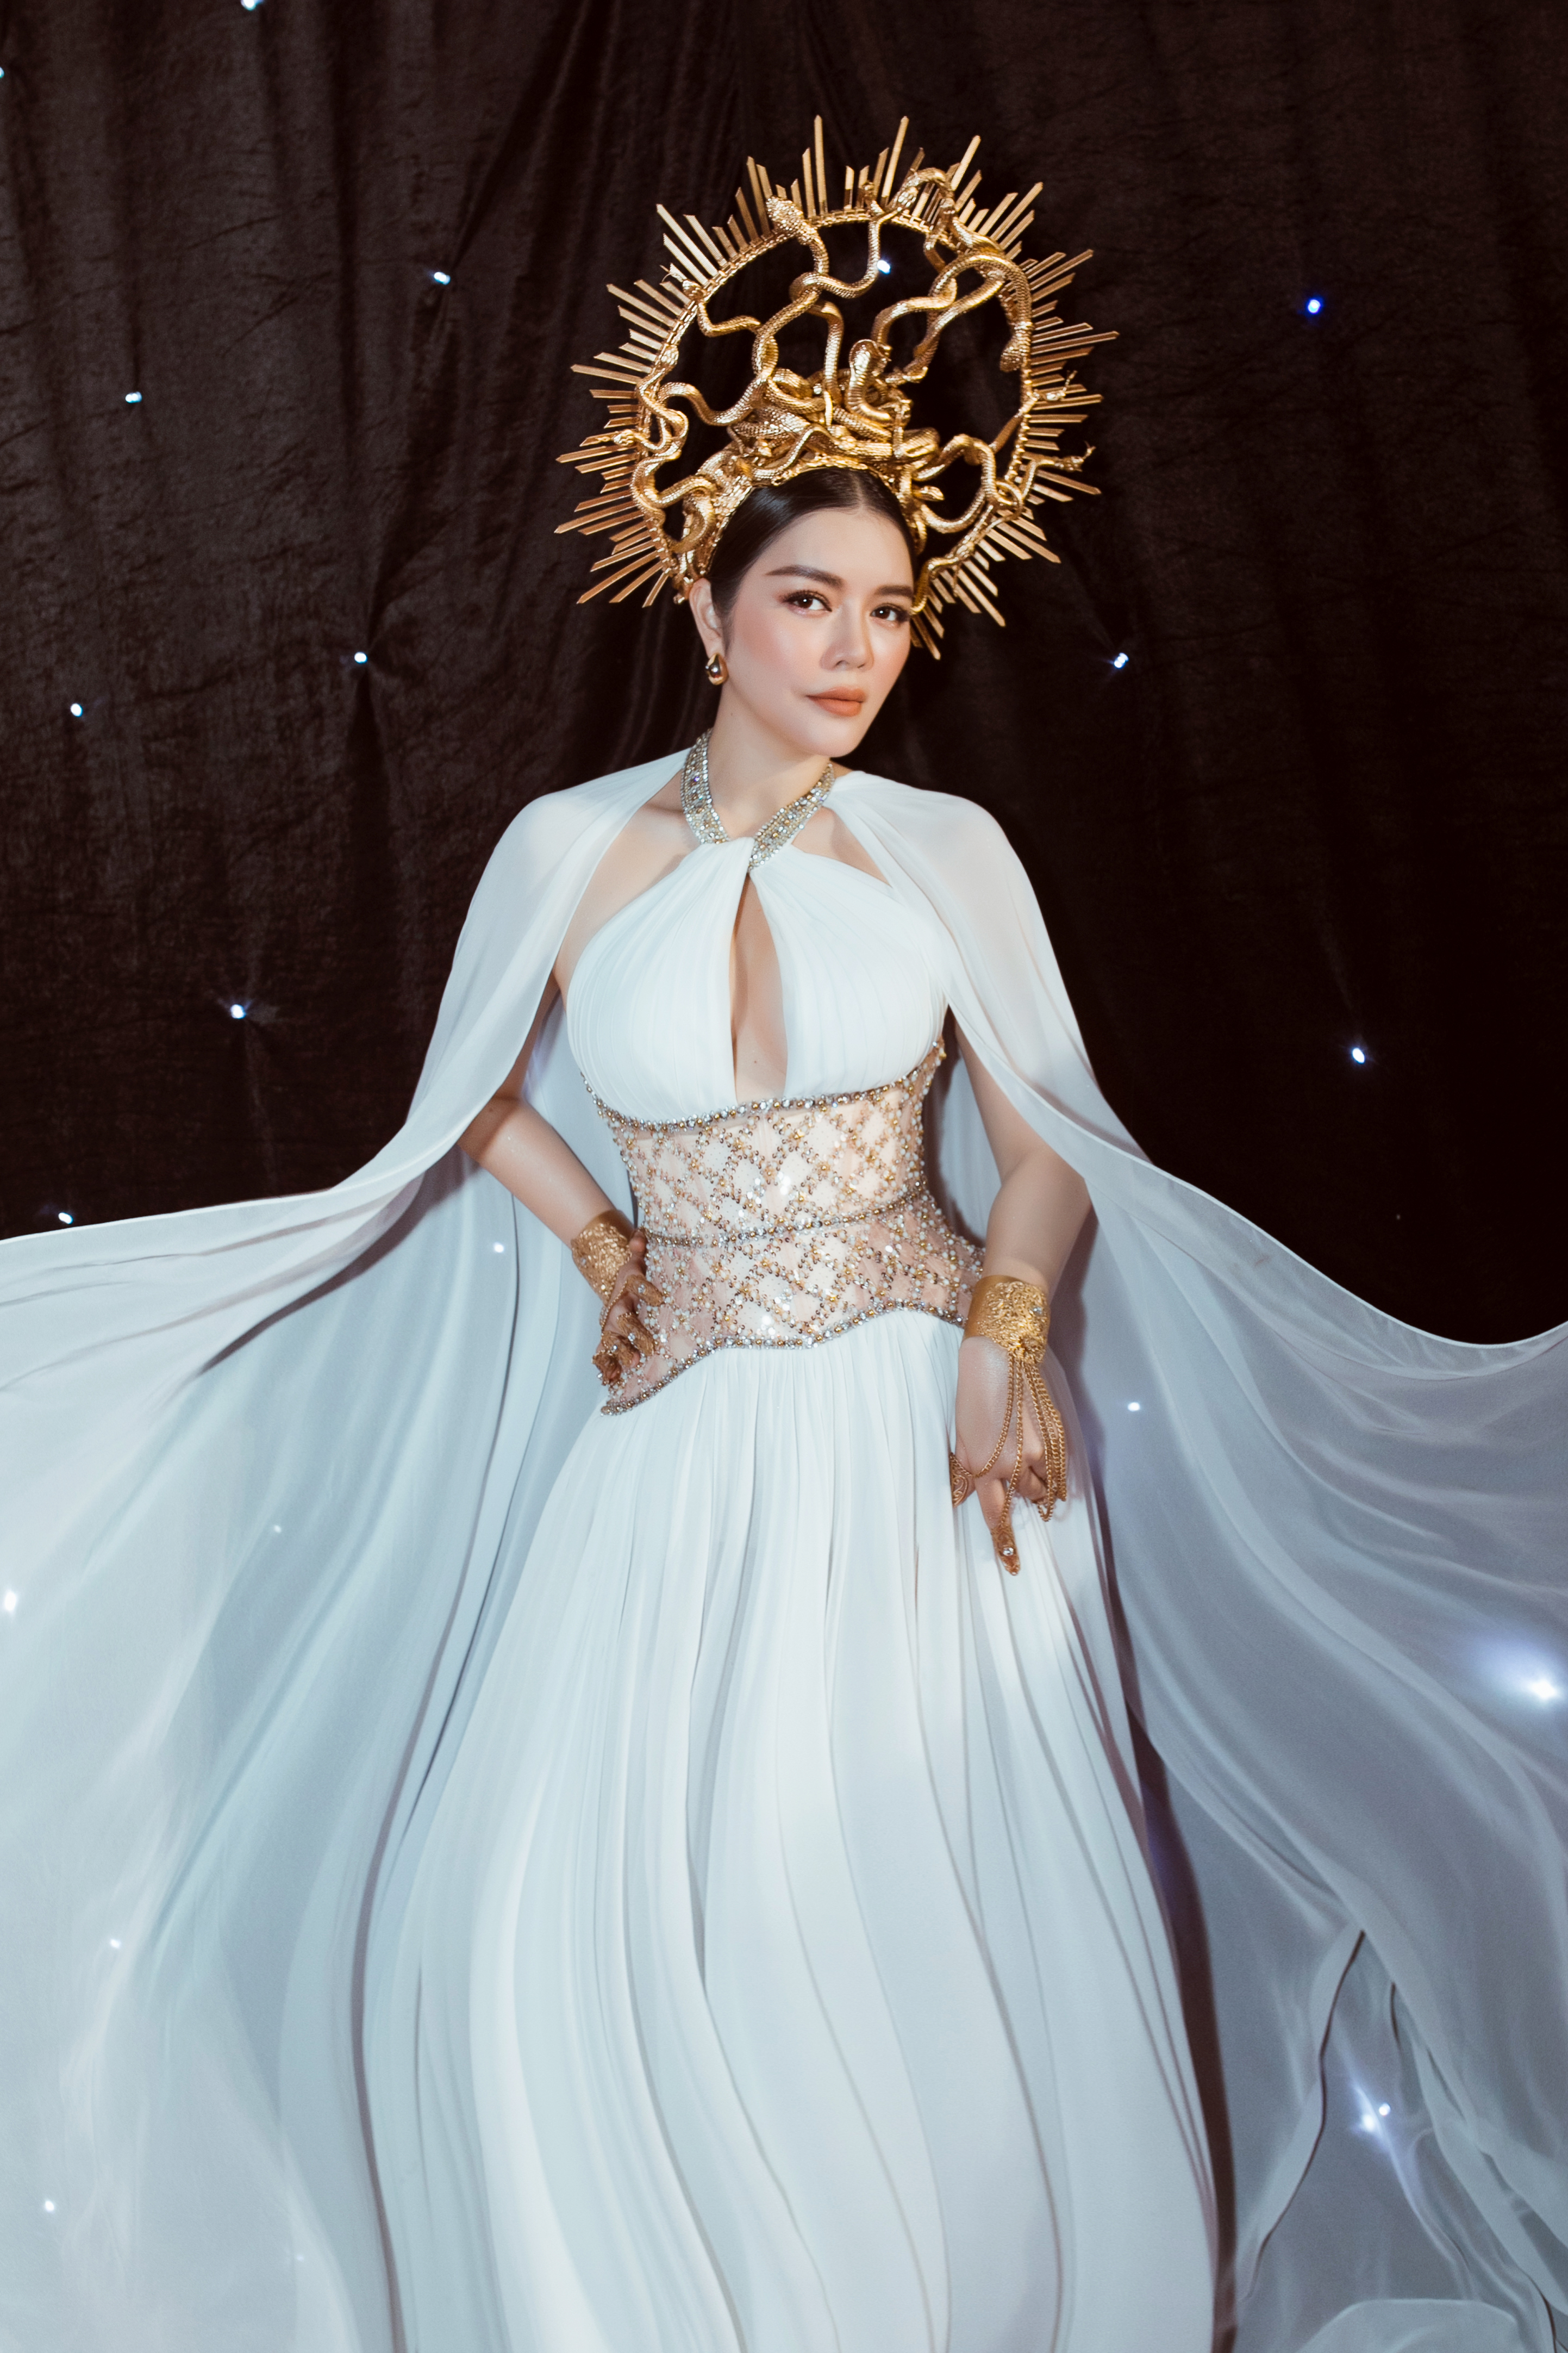 Tiểu Vy hóa nữ thần với váy cưới của Anh Thư - Ngôi sao